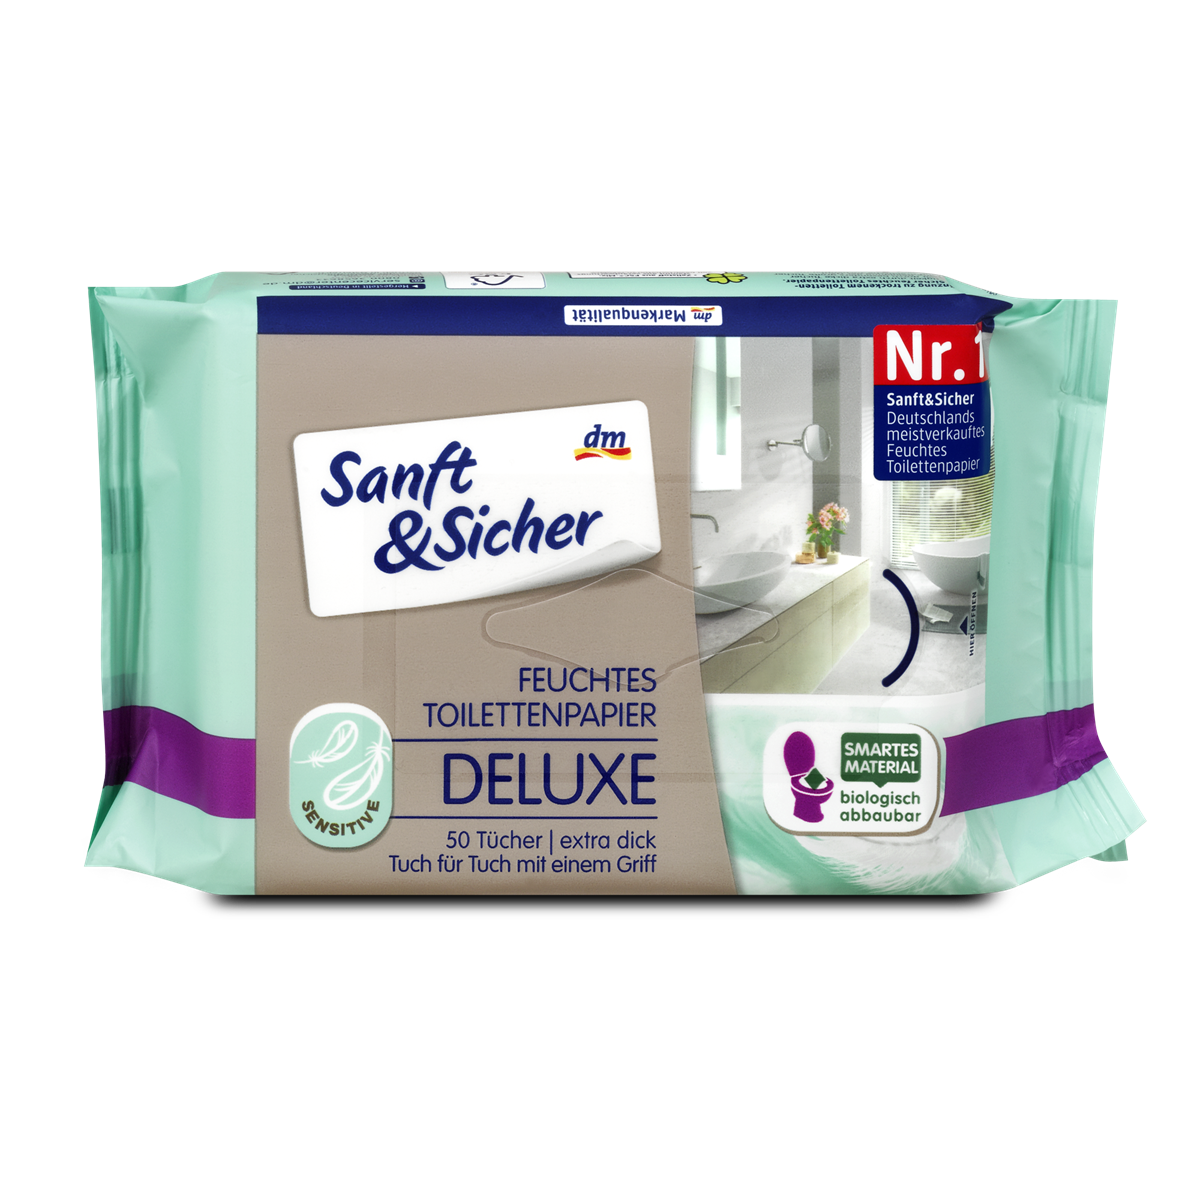 Sanft&Sicher Feuchtes Toilettenpapier Deluxe Sensitive 50 Stk. 1,25 €